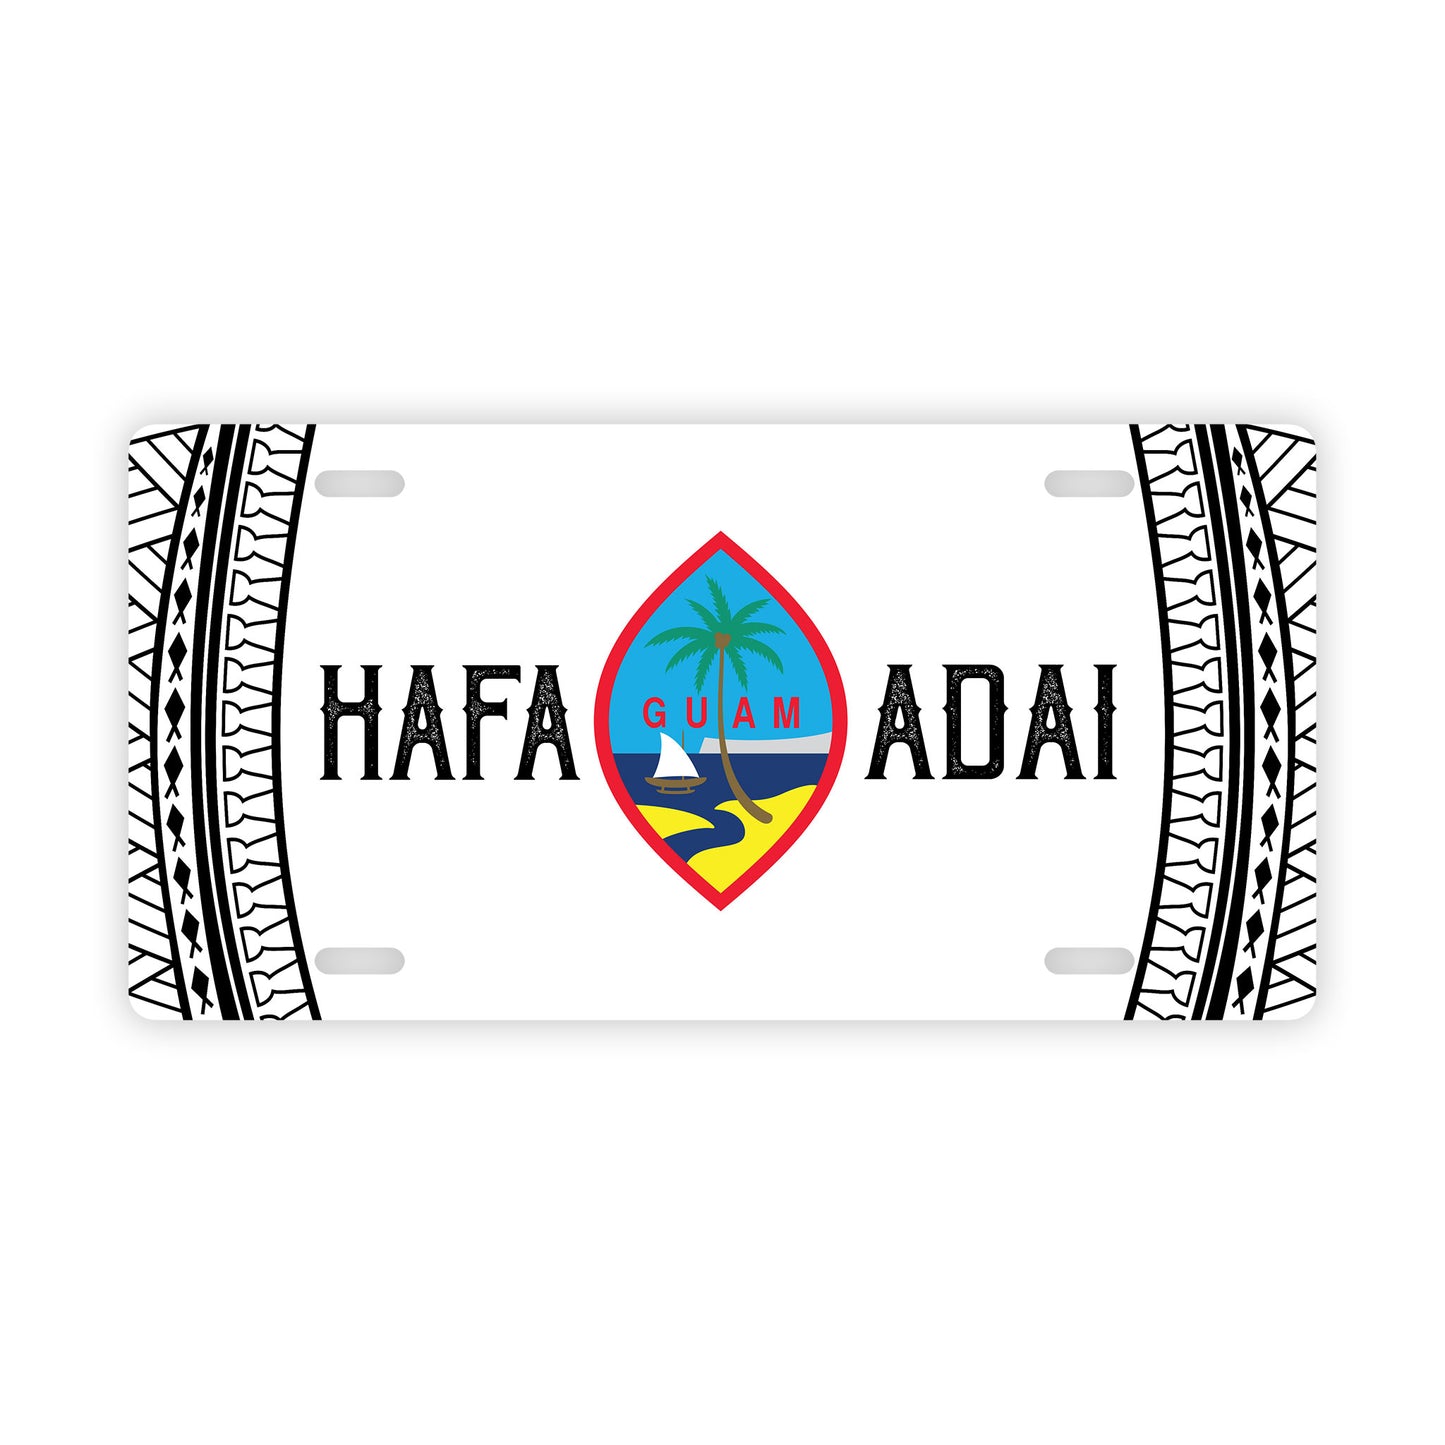 Hafa Adai Guam Tribal White Car License Plate